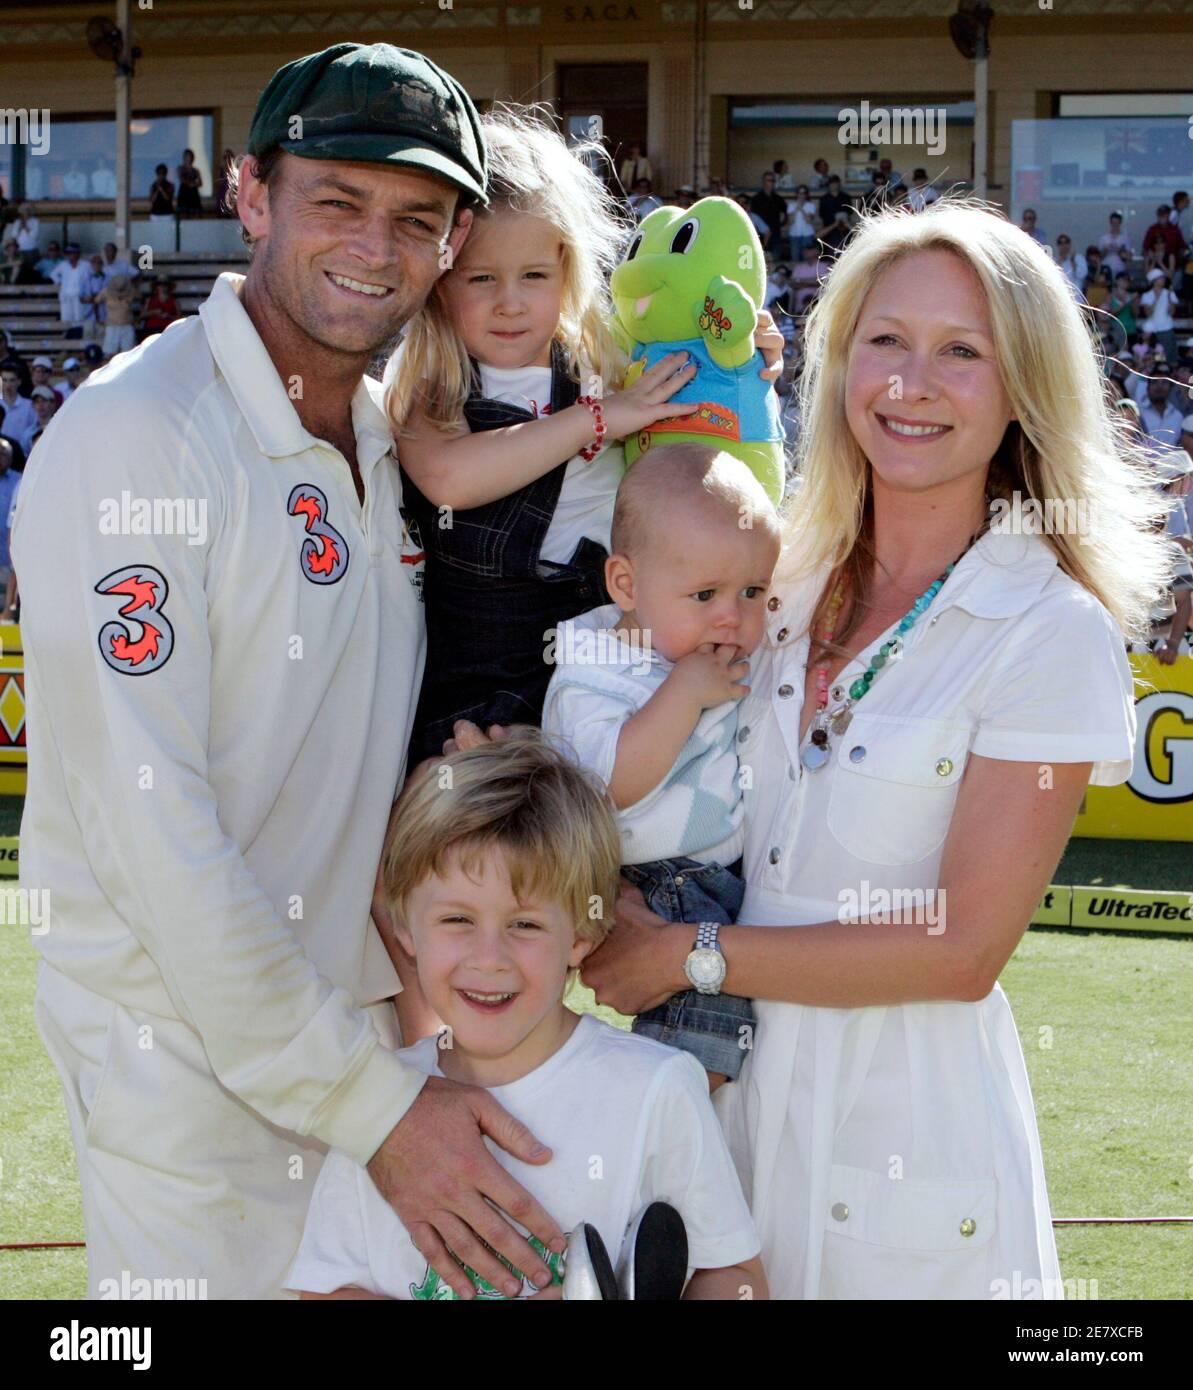 Adam Gilchrist (L), le gardien de cricket de l'Australie qui prend sa retraite, pose avec sa femme Mel (R) et ses enfants (L-R) Annie, 3 ans, Harrison, 6 ans et Archie, 11 mois après que l'Australie et l'Inde aient organisé leur quatrième et dernier match de cricket à l'Adelaide Oval le 28 janvier 2008. Gilchrist a stupéfait le monde du cricket samedi lorsqu’il a annoncé qu’il abandonnait le cricket d’essai à la fin du match, puis qu’il s’agissait d’un jour d’internationaux en mars. Gilchrist a terminé sa dernière journée de cricket d'essai avec deux prises pour prendre son compte de carrière final à 416 licenciements, trois jours après avoir battu le record mondial pour un gardien de cricket.Gilchris Banque D'Images